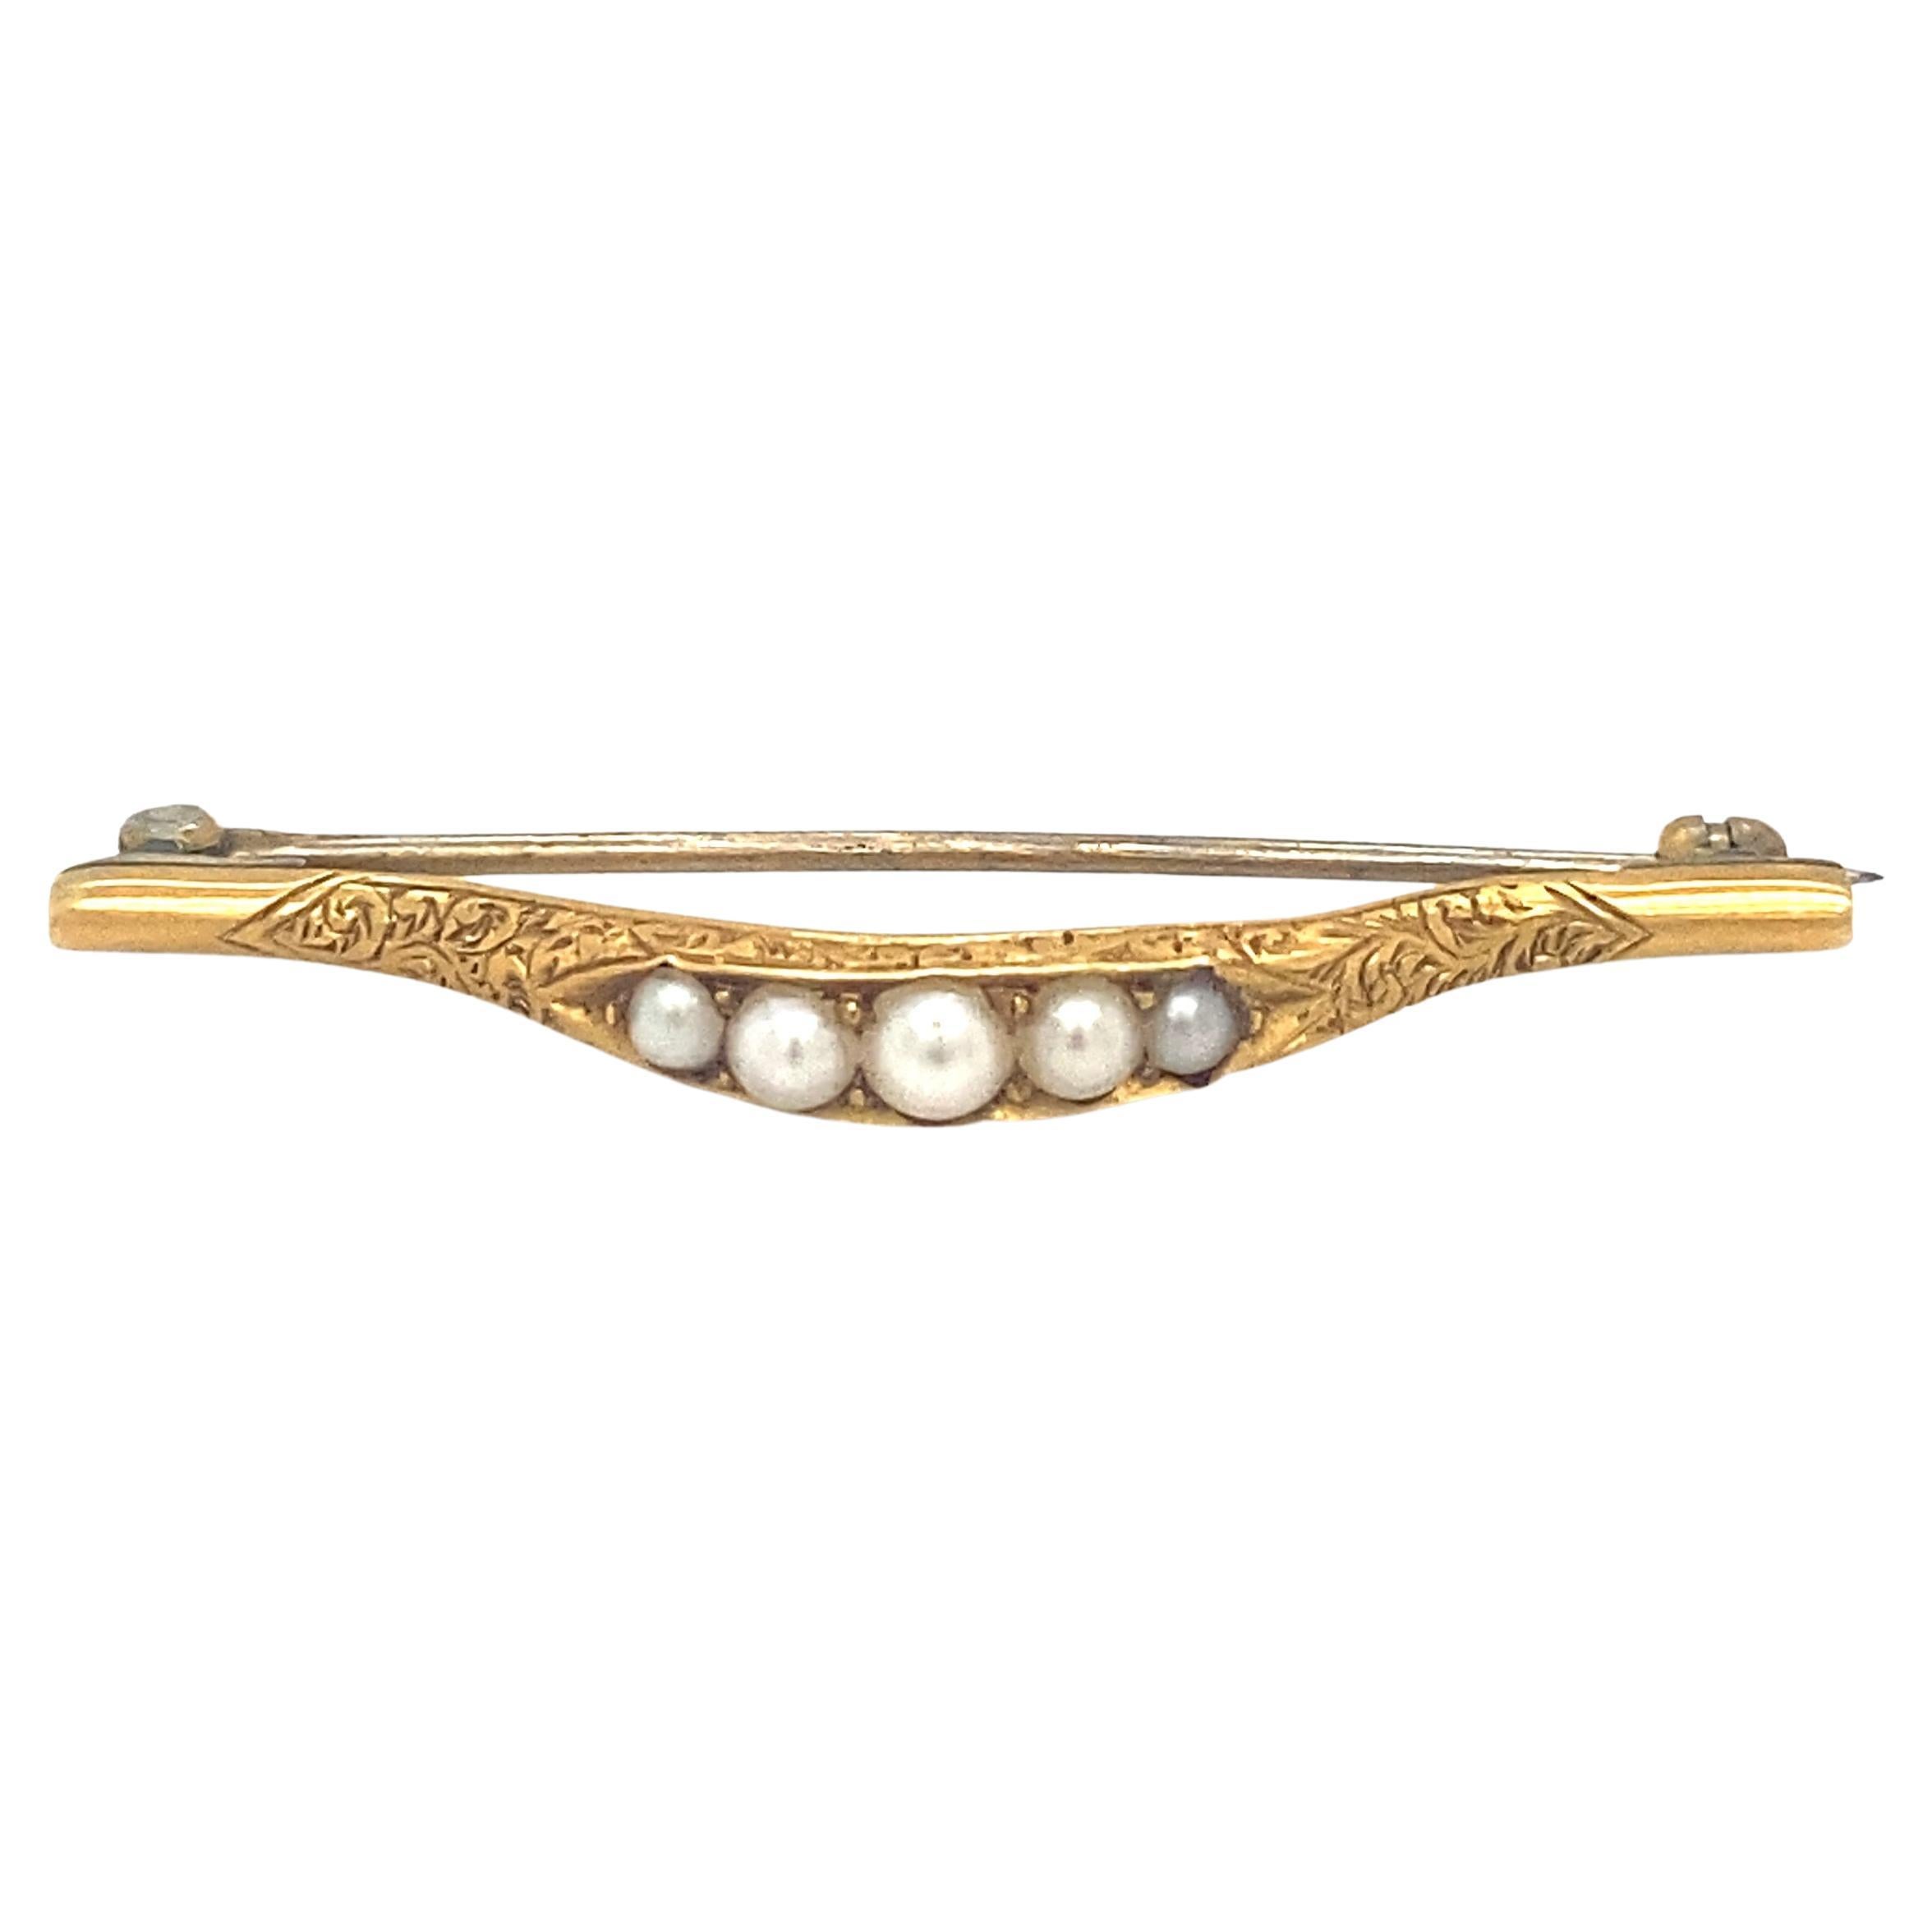 Épingle de lingerie victorienne en or 18 carats avec perles de rocaille, c. 1875